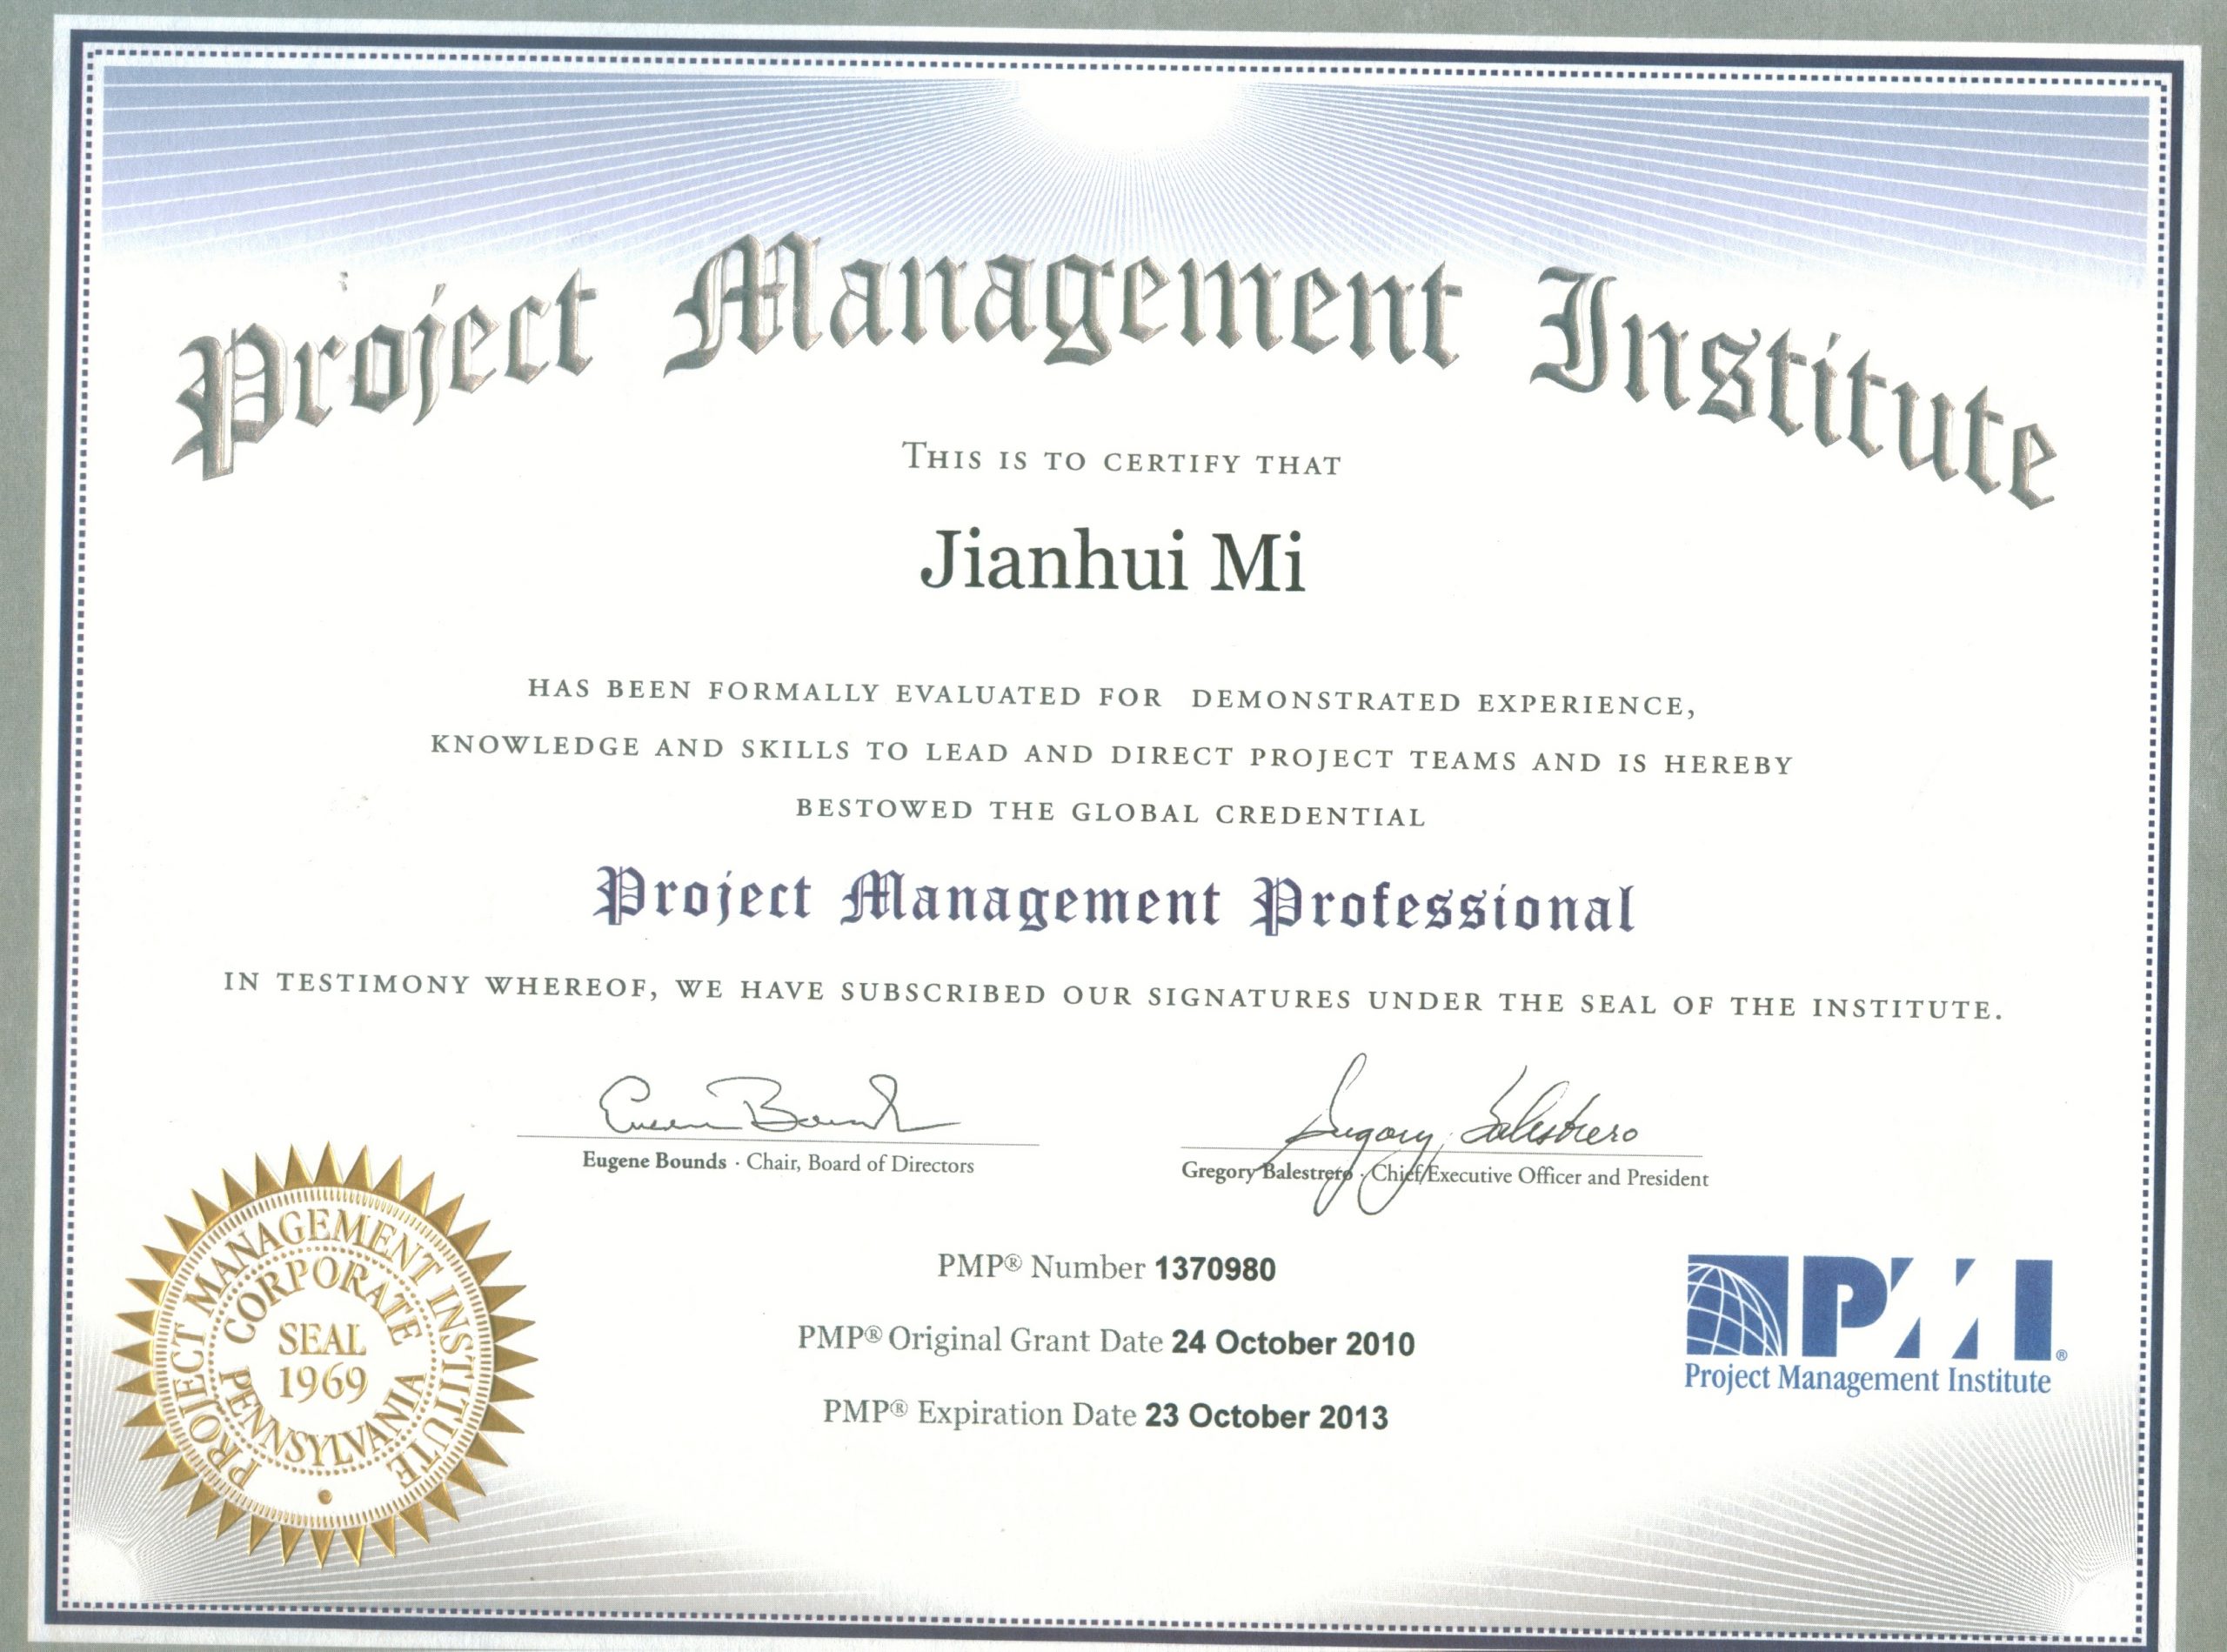 米国生活-Mi Jianhui-PMP-Certificate